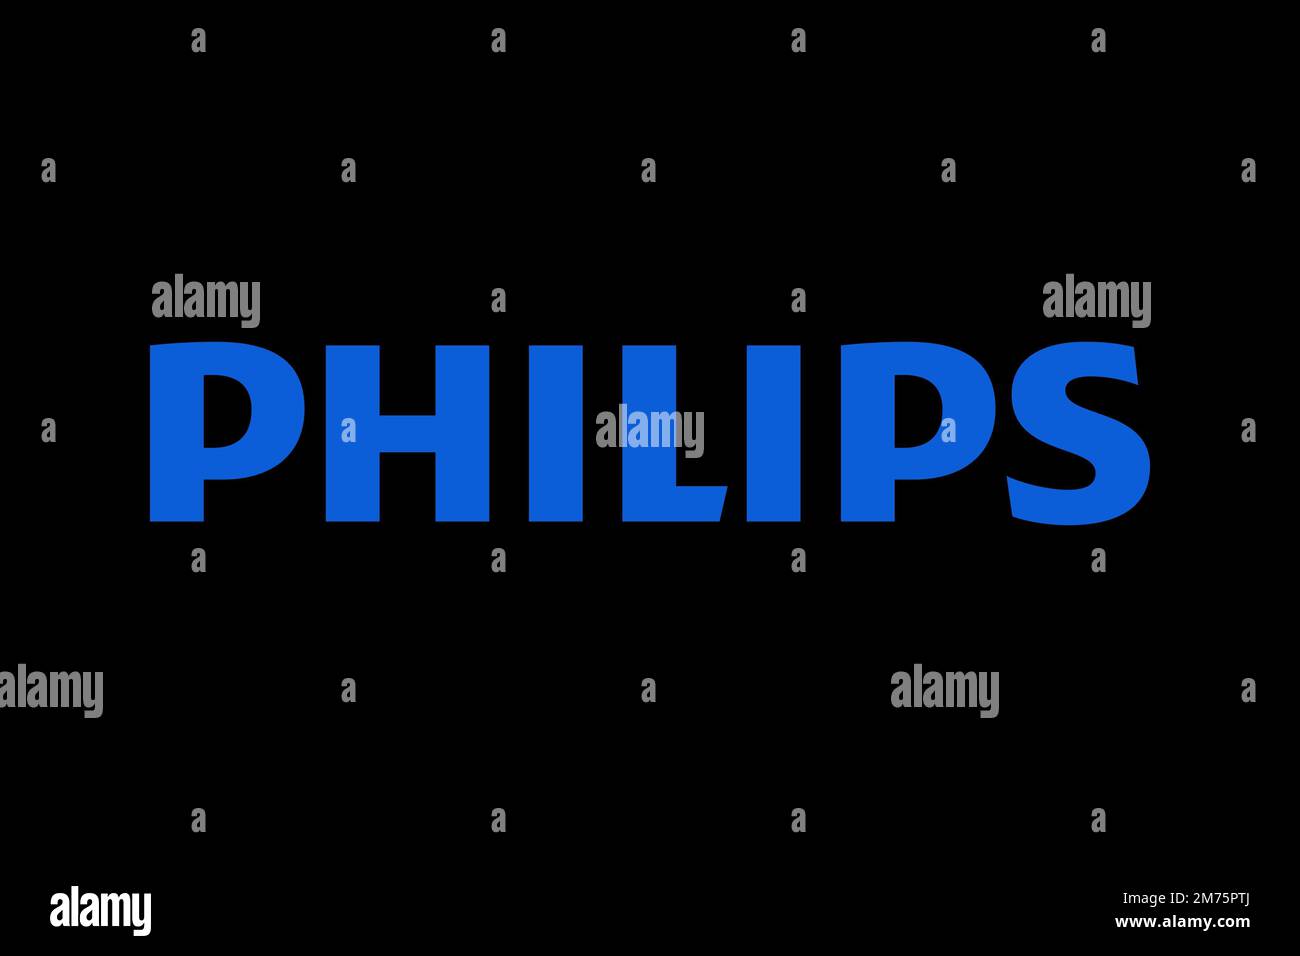 Philips Consumer Lifestyle, Logo, Black background Stock Photo - Alamy